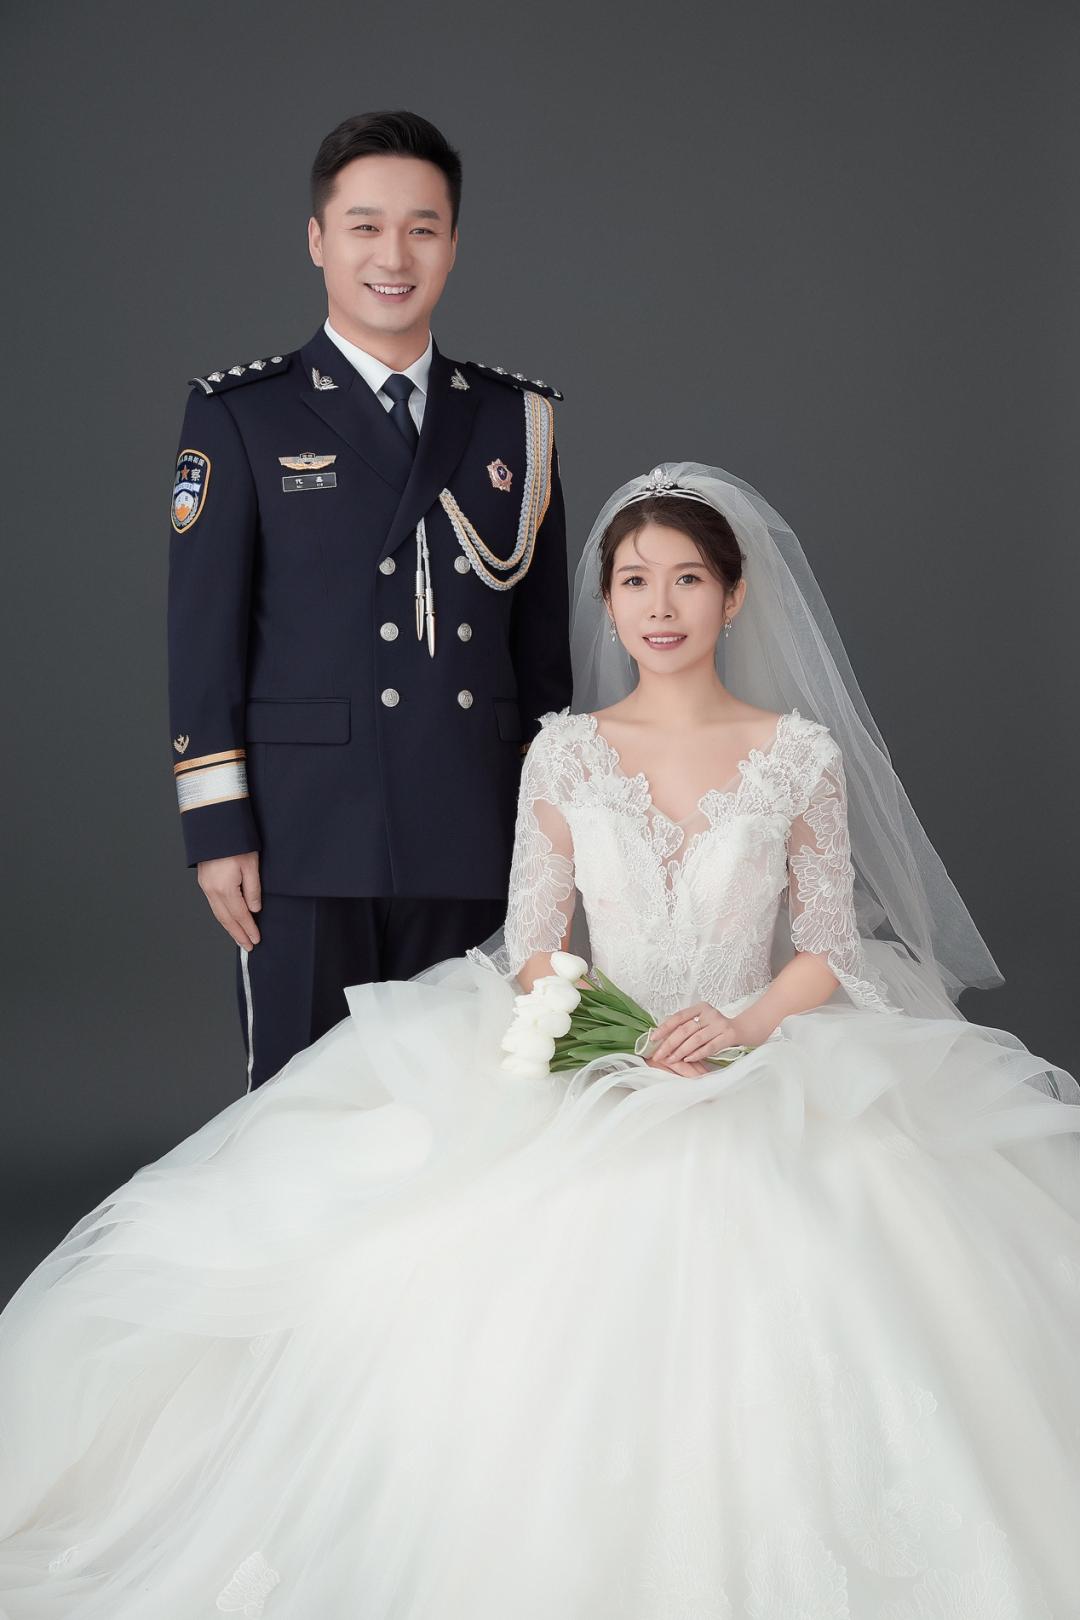 中国警察结婚警用礼服图片